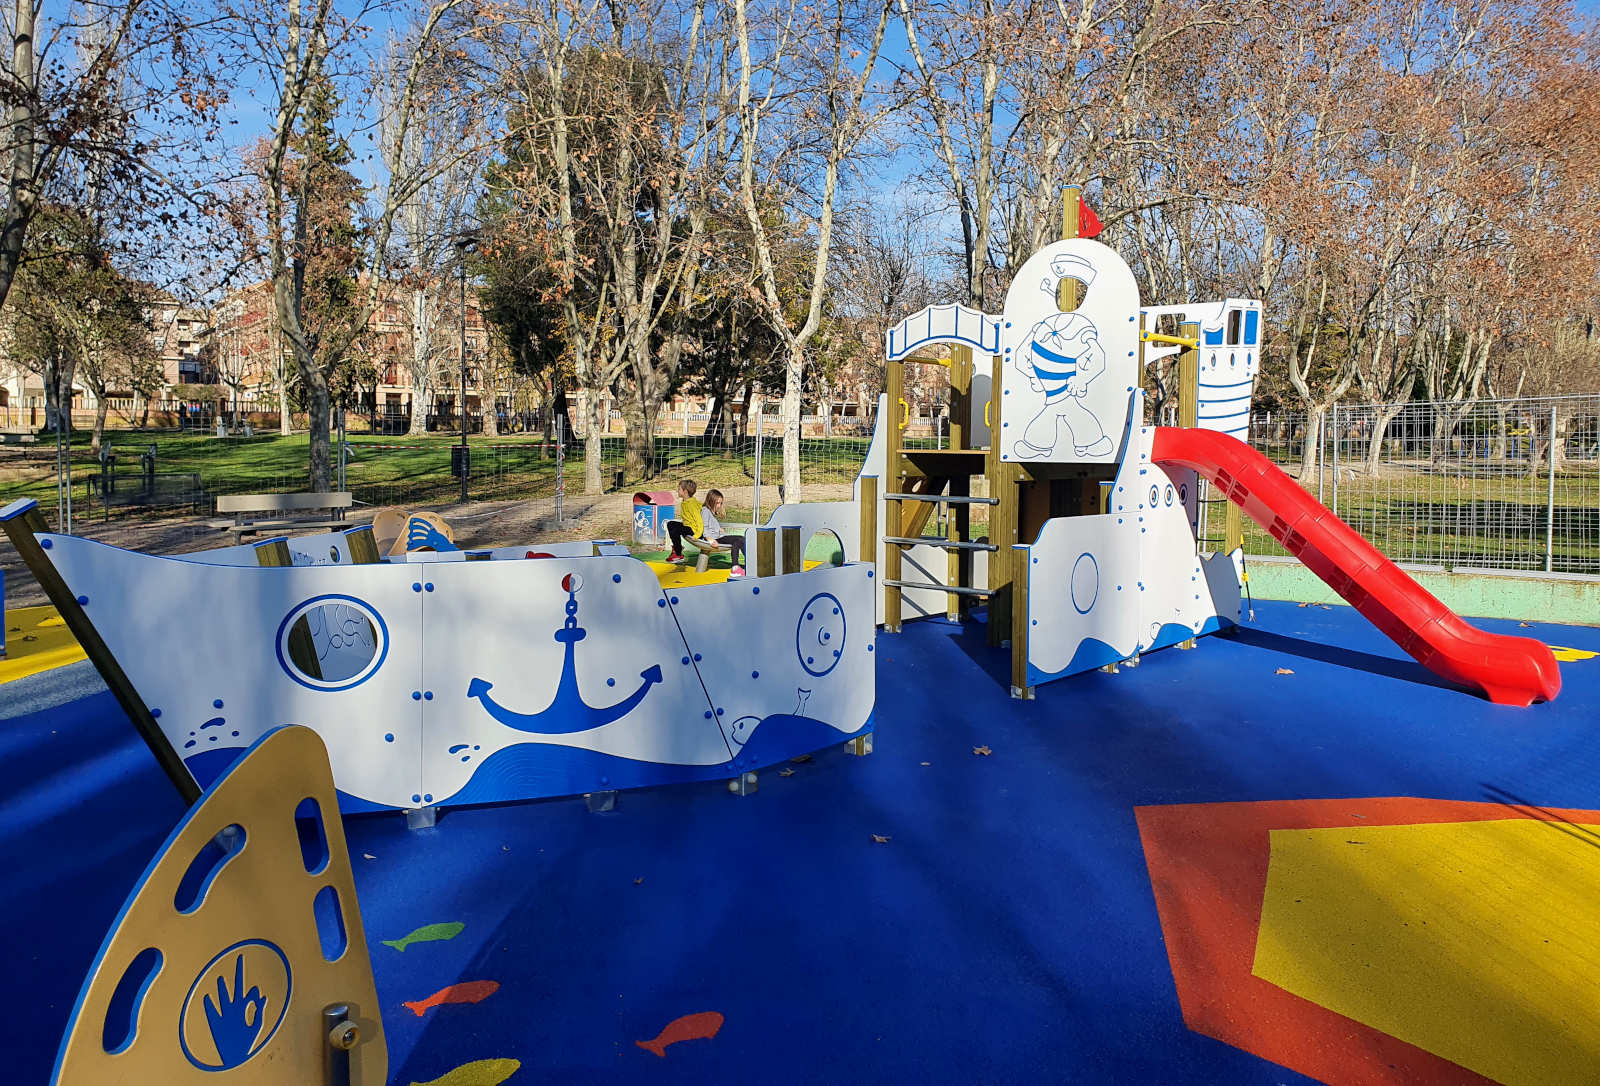 Parque infantil inclusivo arriba a Aragón con el pesquero ibicenco - Parques  Infantiles Inclusivos